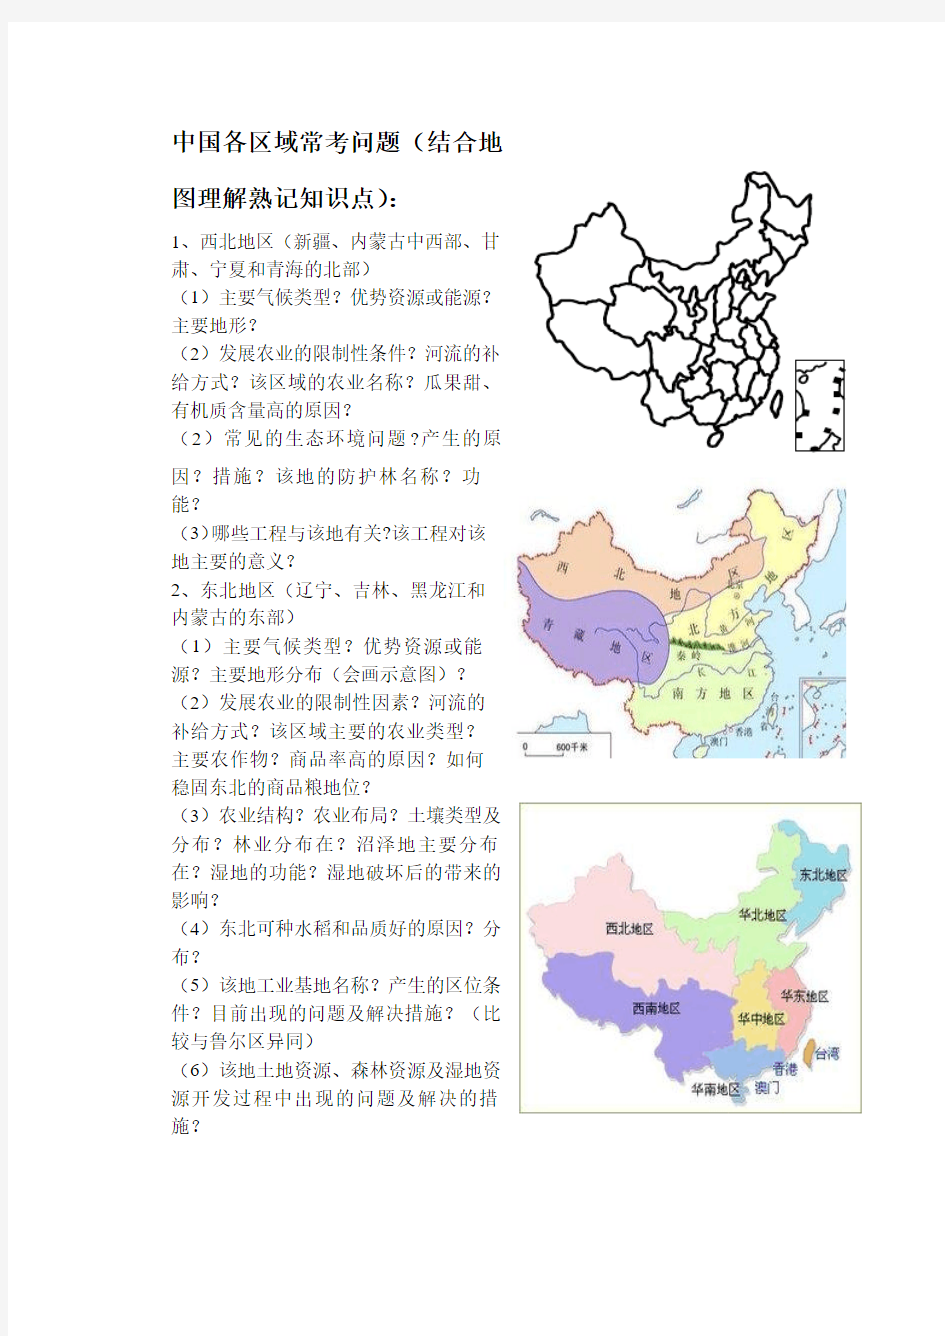 高二必修中国地理各区域常考知识点(很有用)